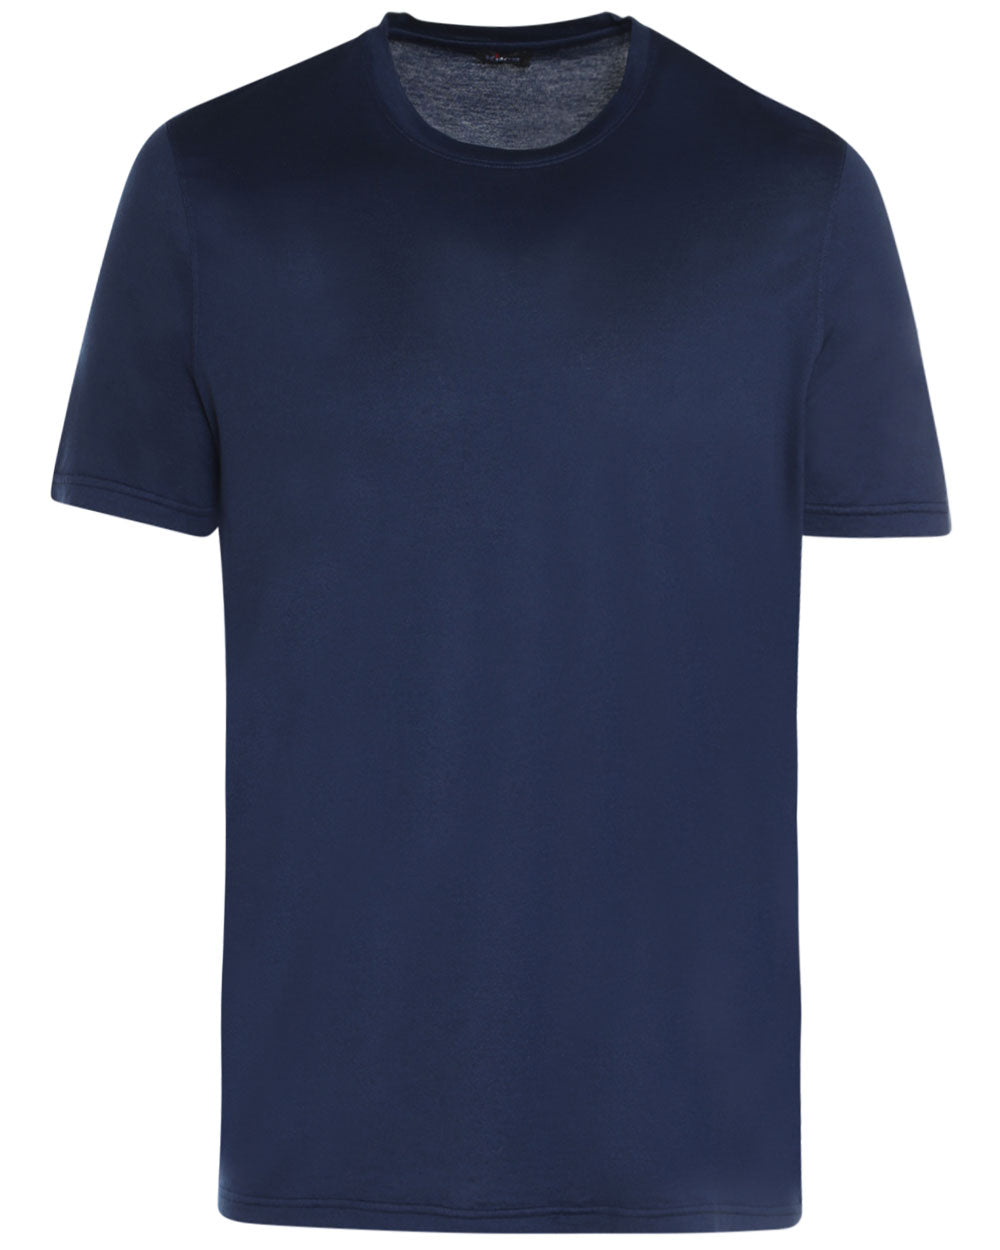 Blue Cotton Blend Short Sleeve T-Shirt